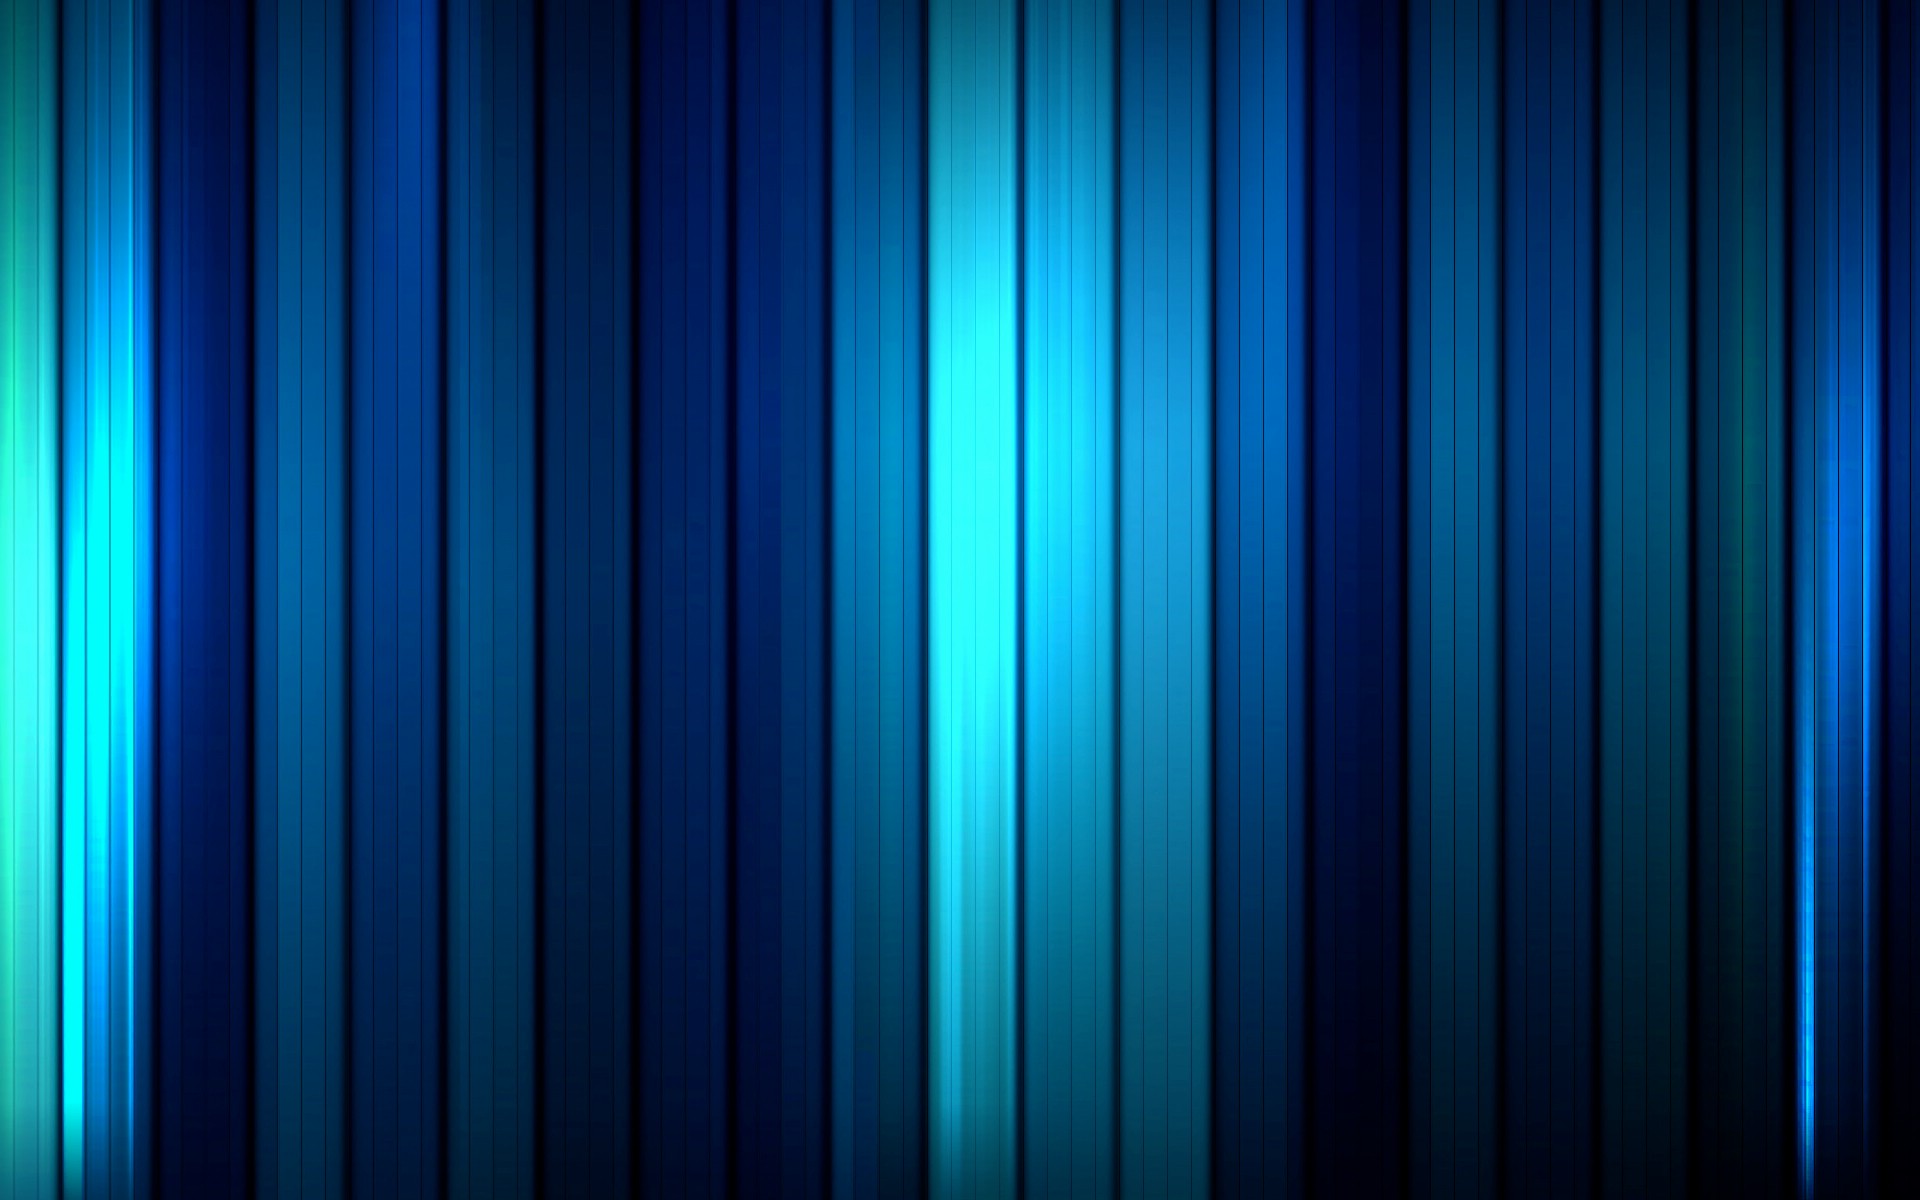 壁纸1920x1200蓝色静谧主题系列壁纸壁纸 蓝色静谧主题系列壁纸壁纸 蓝色静谧主题系列壁纸图片 蓝色静谧主题系列壁纸素材 创意壁纸 创意图库 创意图片素材桌面壁纸